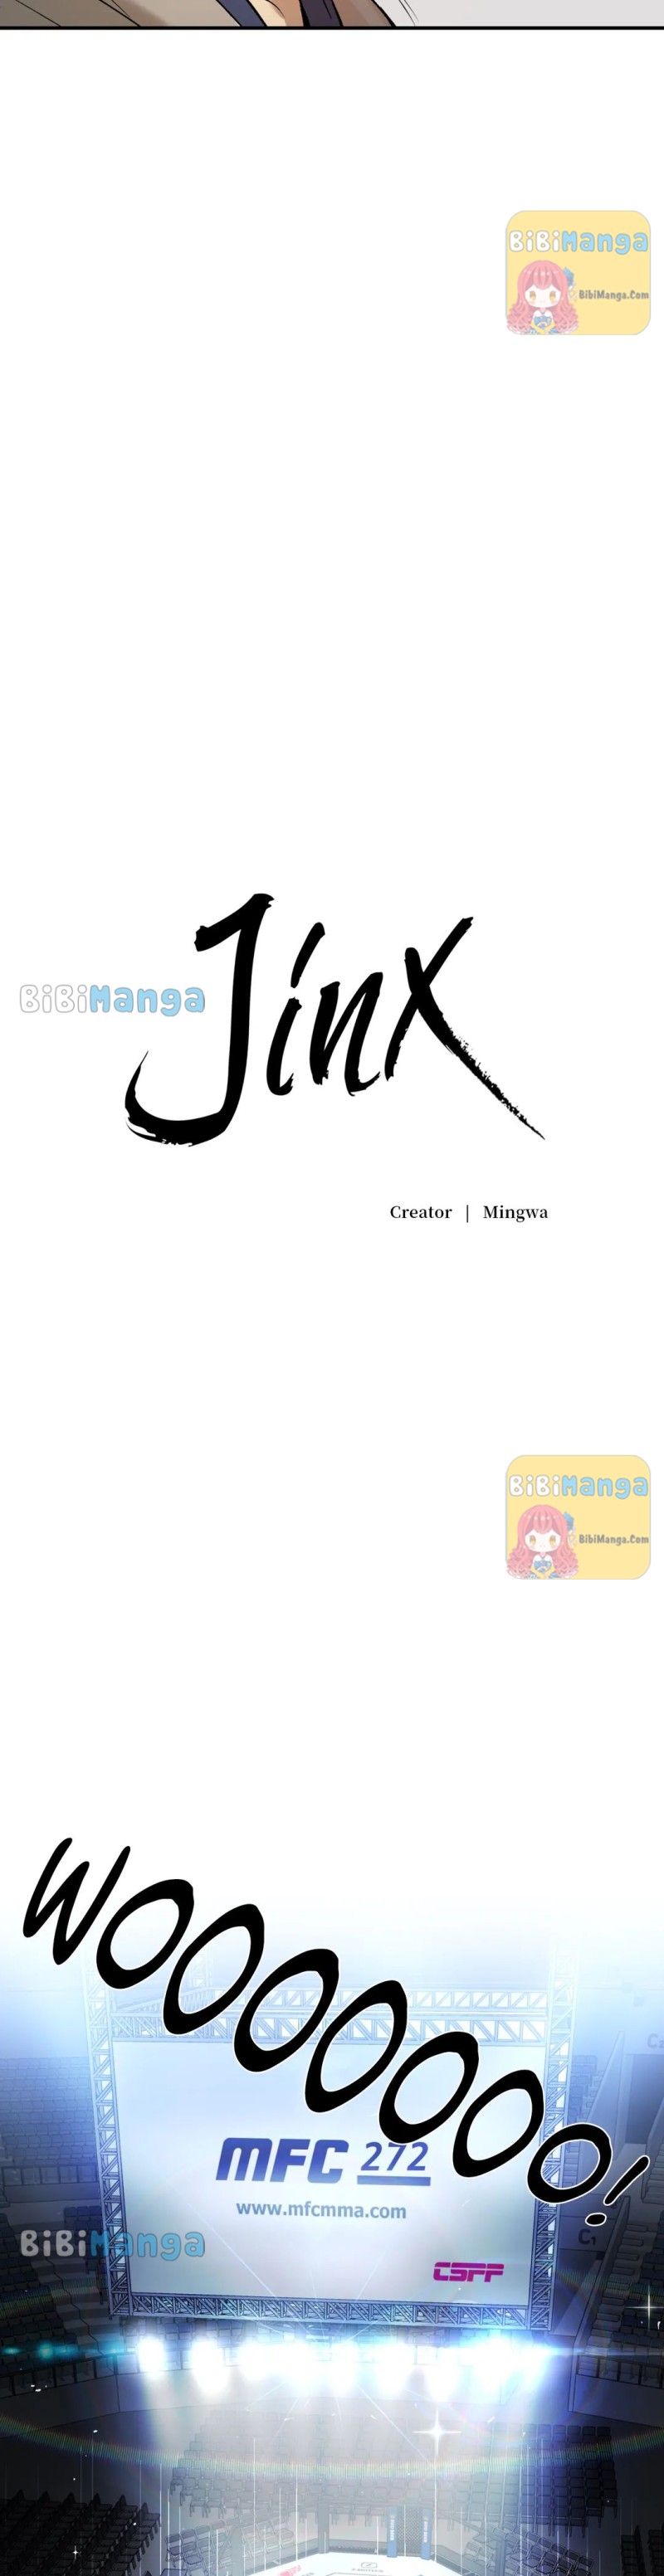 Jinx Chapter 15 image 29